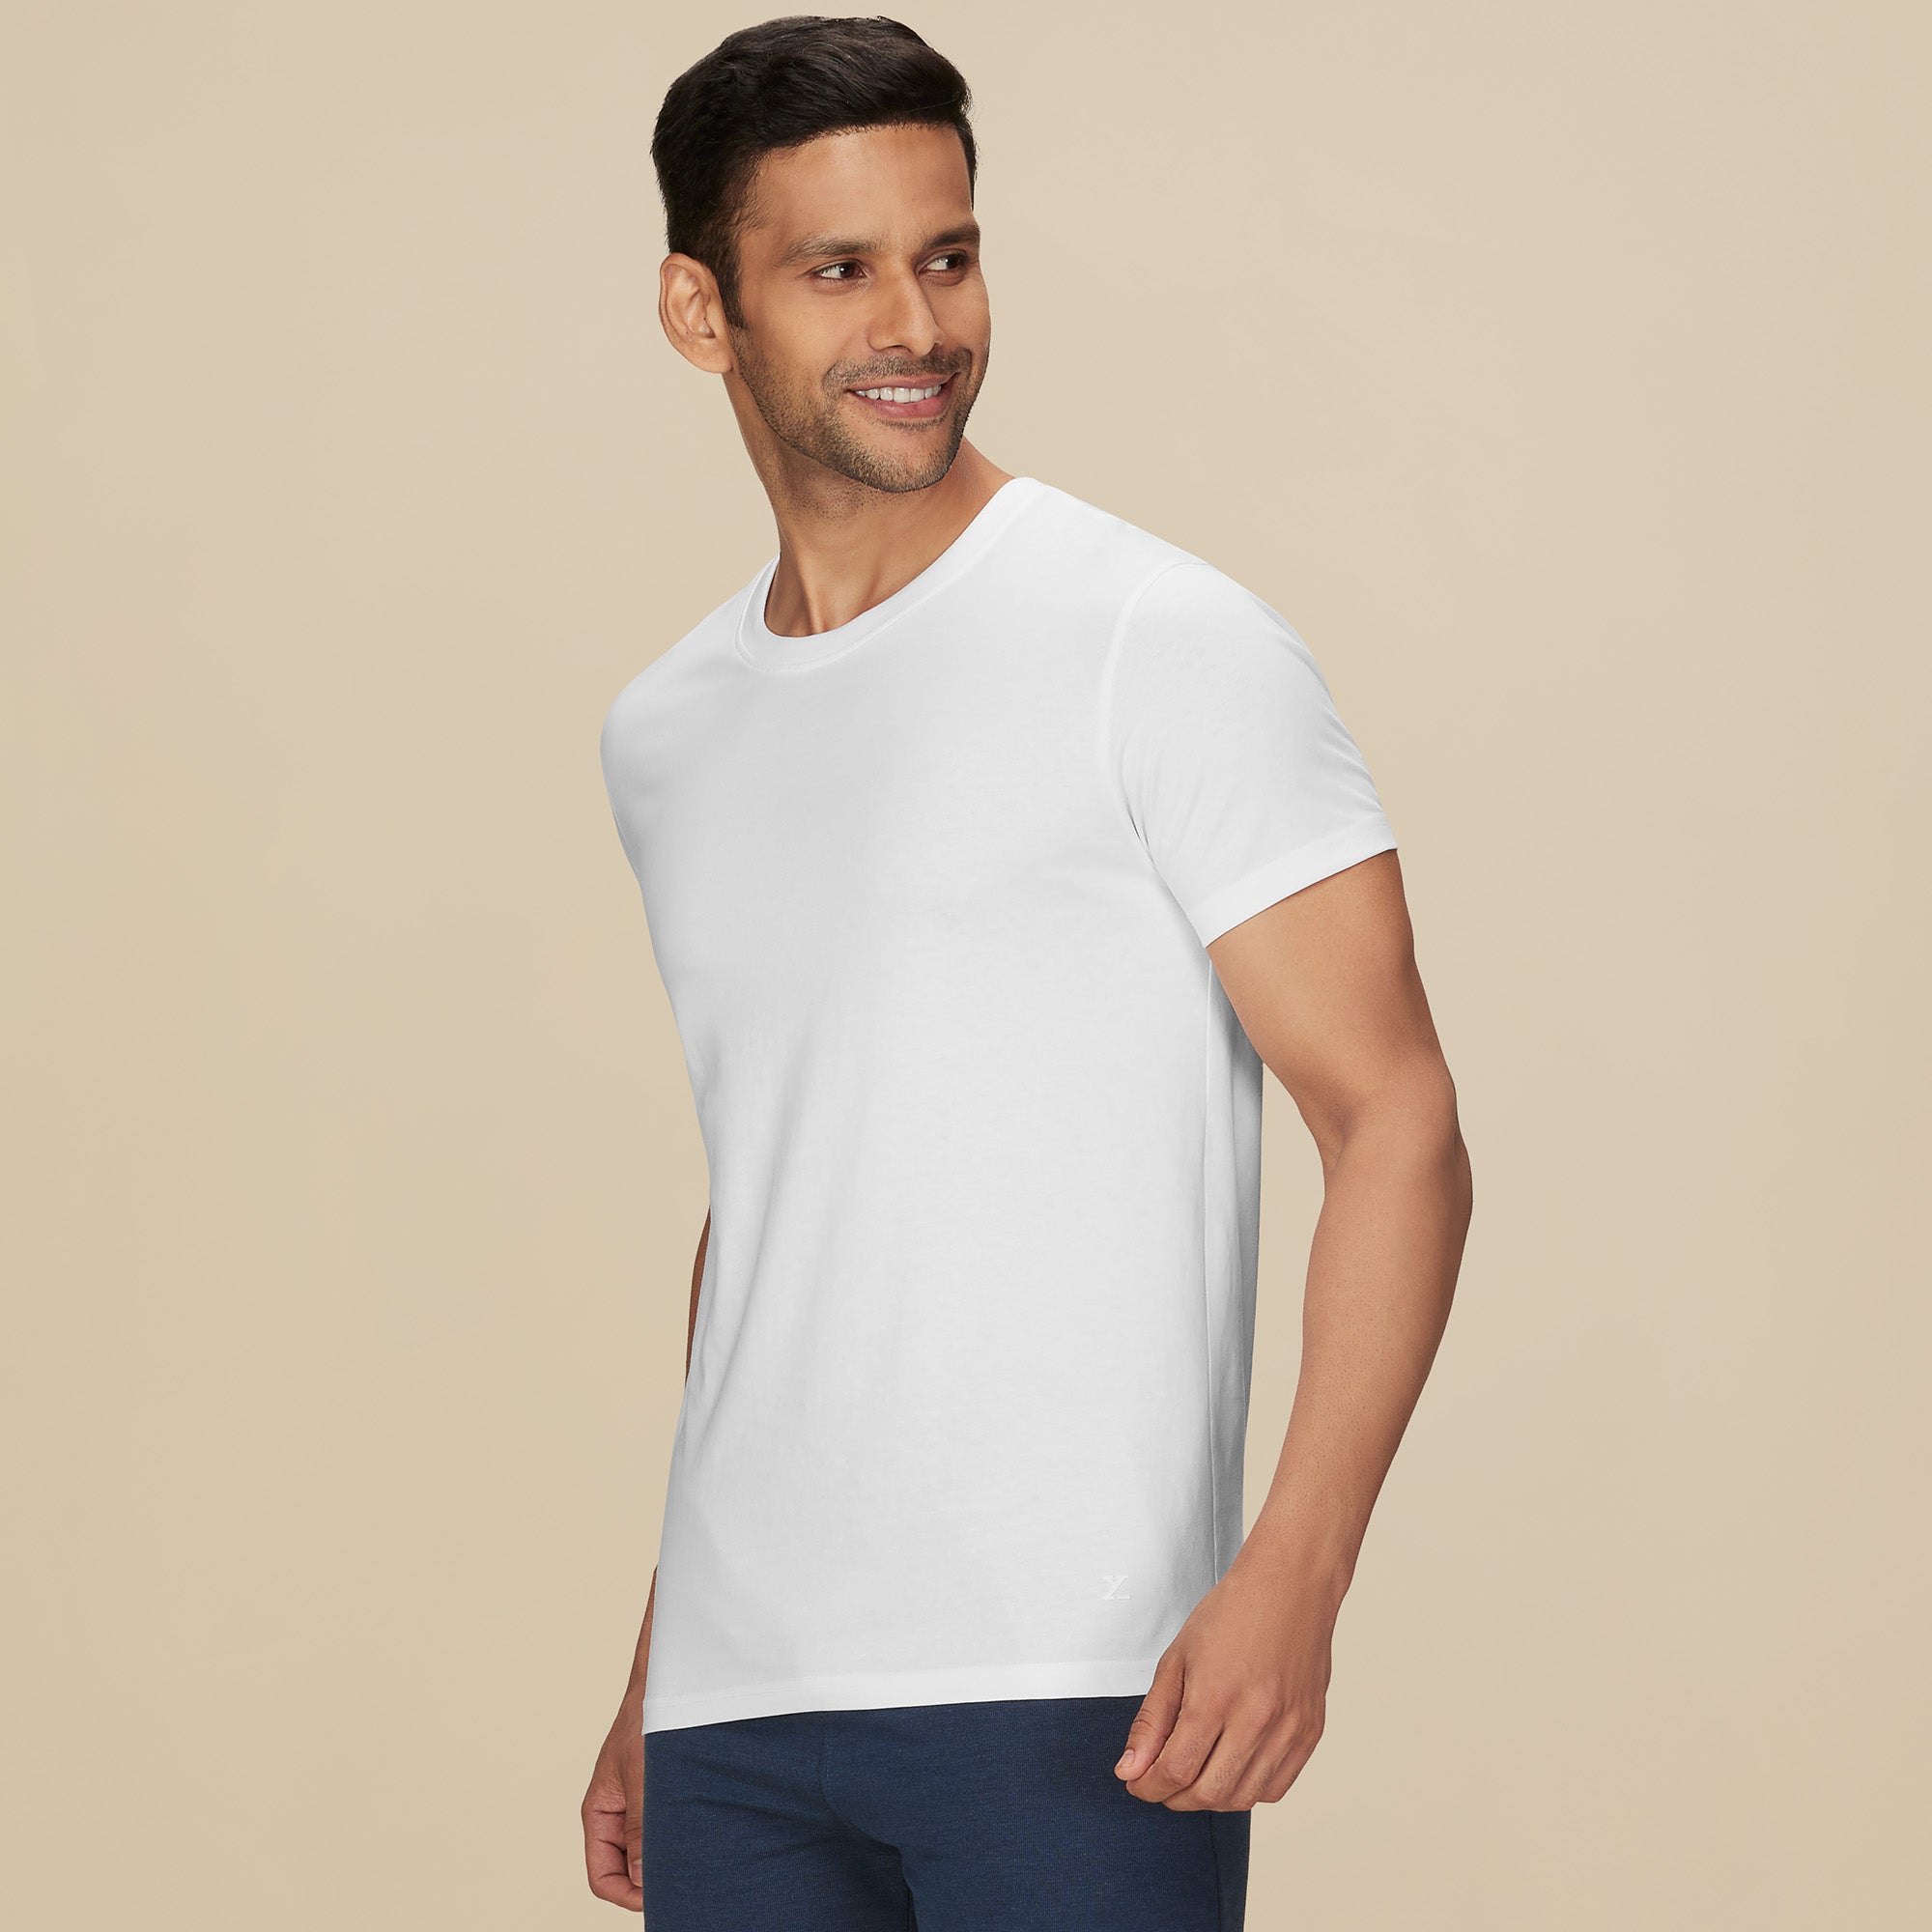 Shop for Men's Premium Supima Cotton Crew Neck T-Shirt – XYXX Apparels